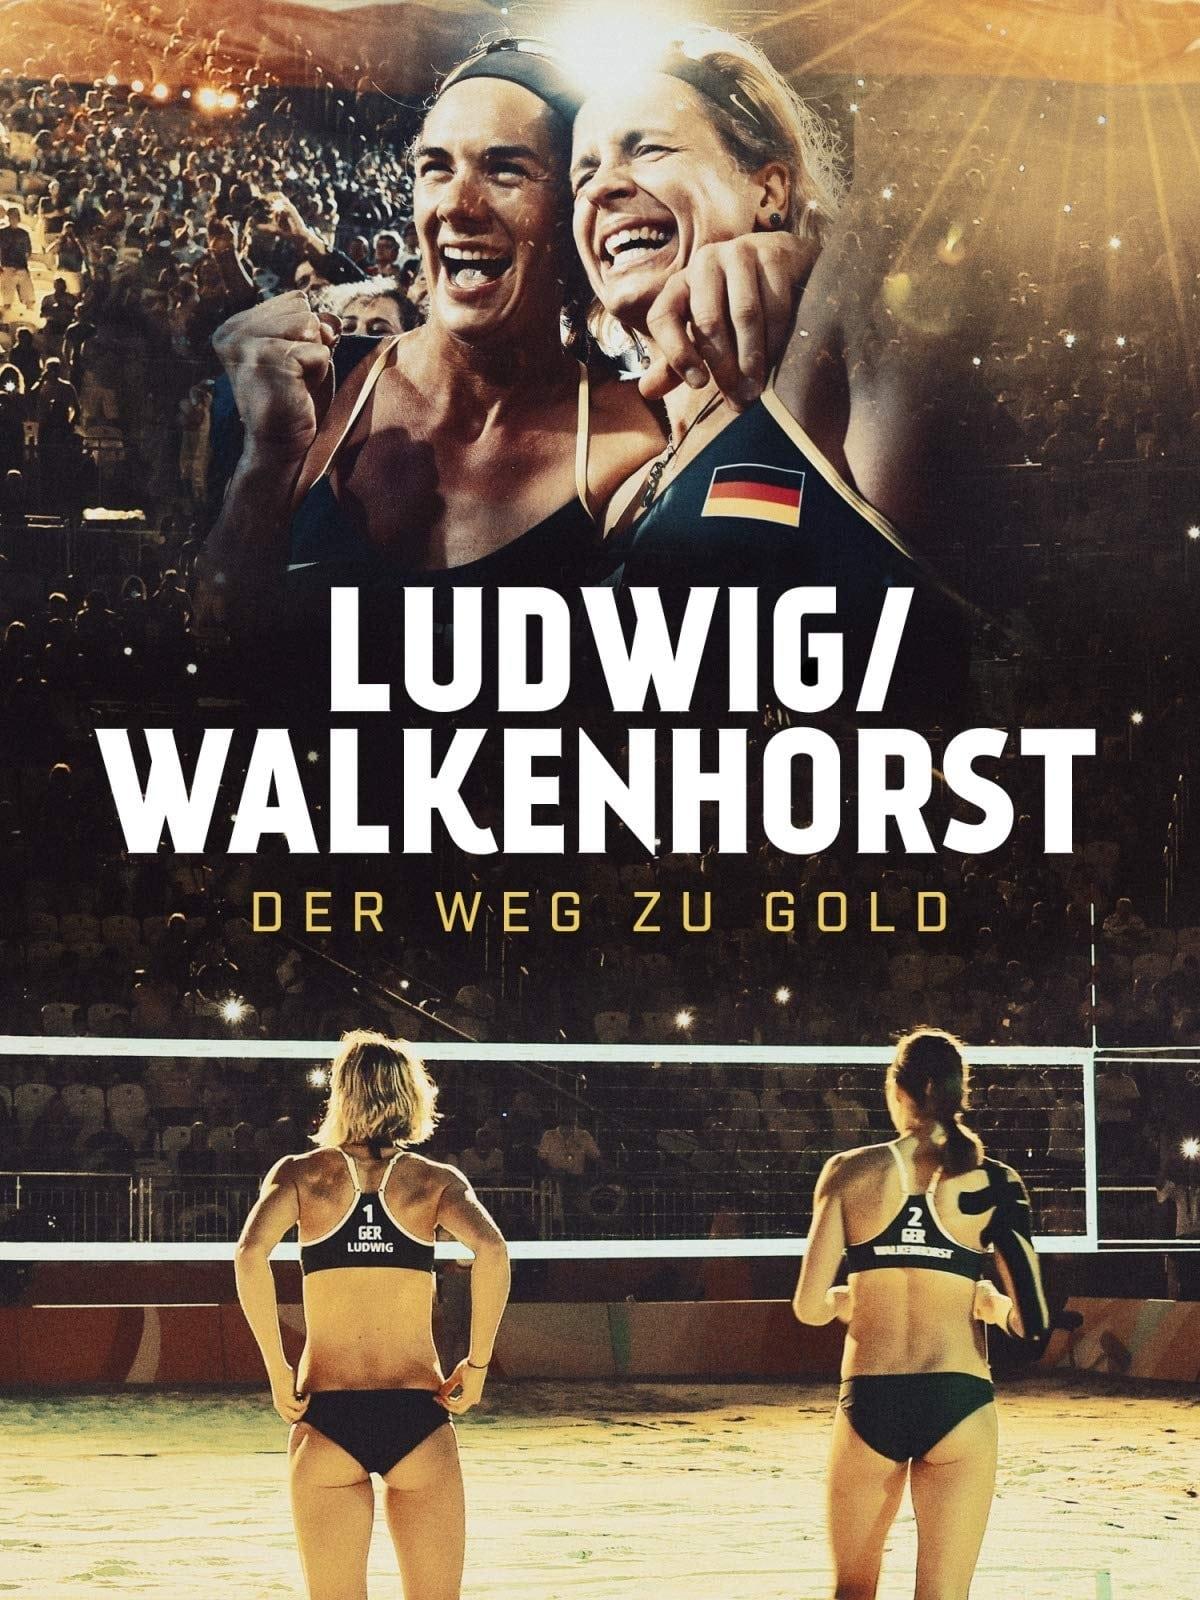 Ludwig / Walkenhorst - Der Weg zu Gold poster